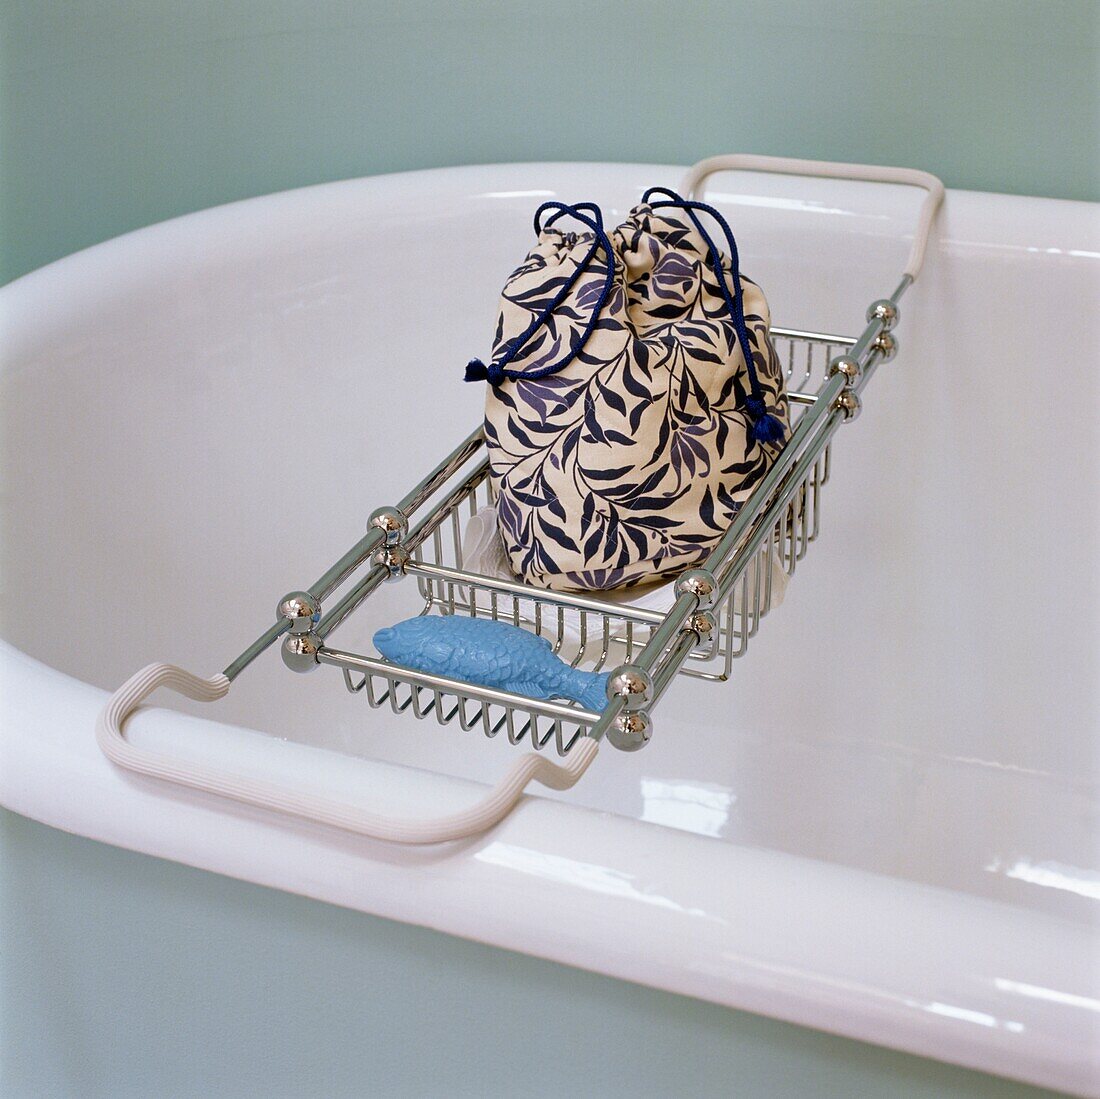 Geblümter Waschbeutel auf dem Badewannenständer einer freistehenden Badewanne mit Rolltop